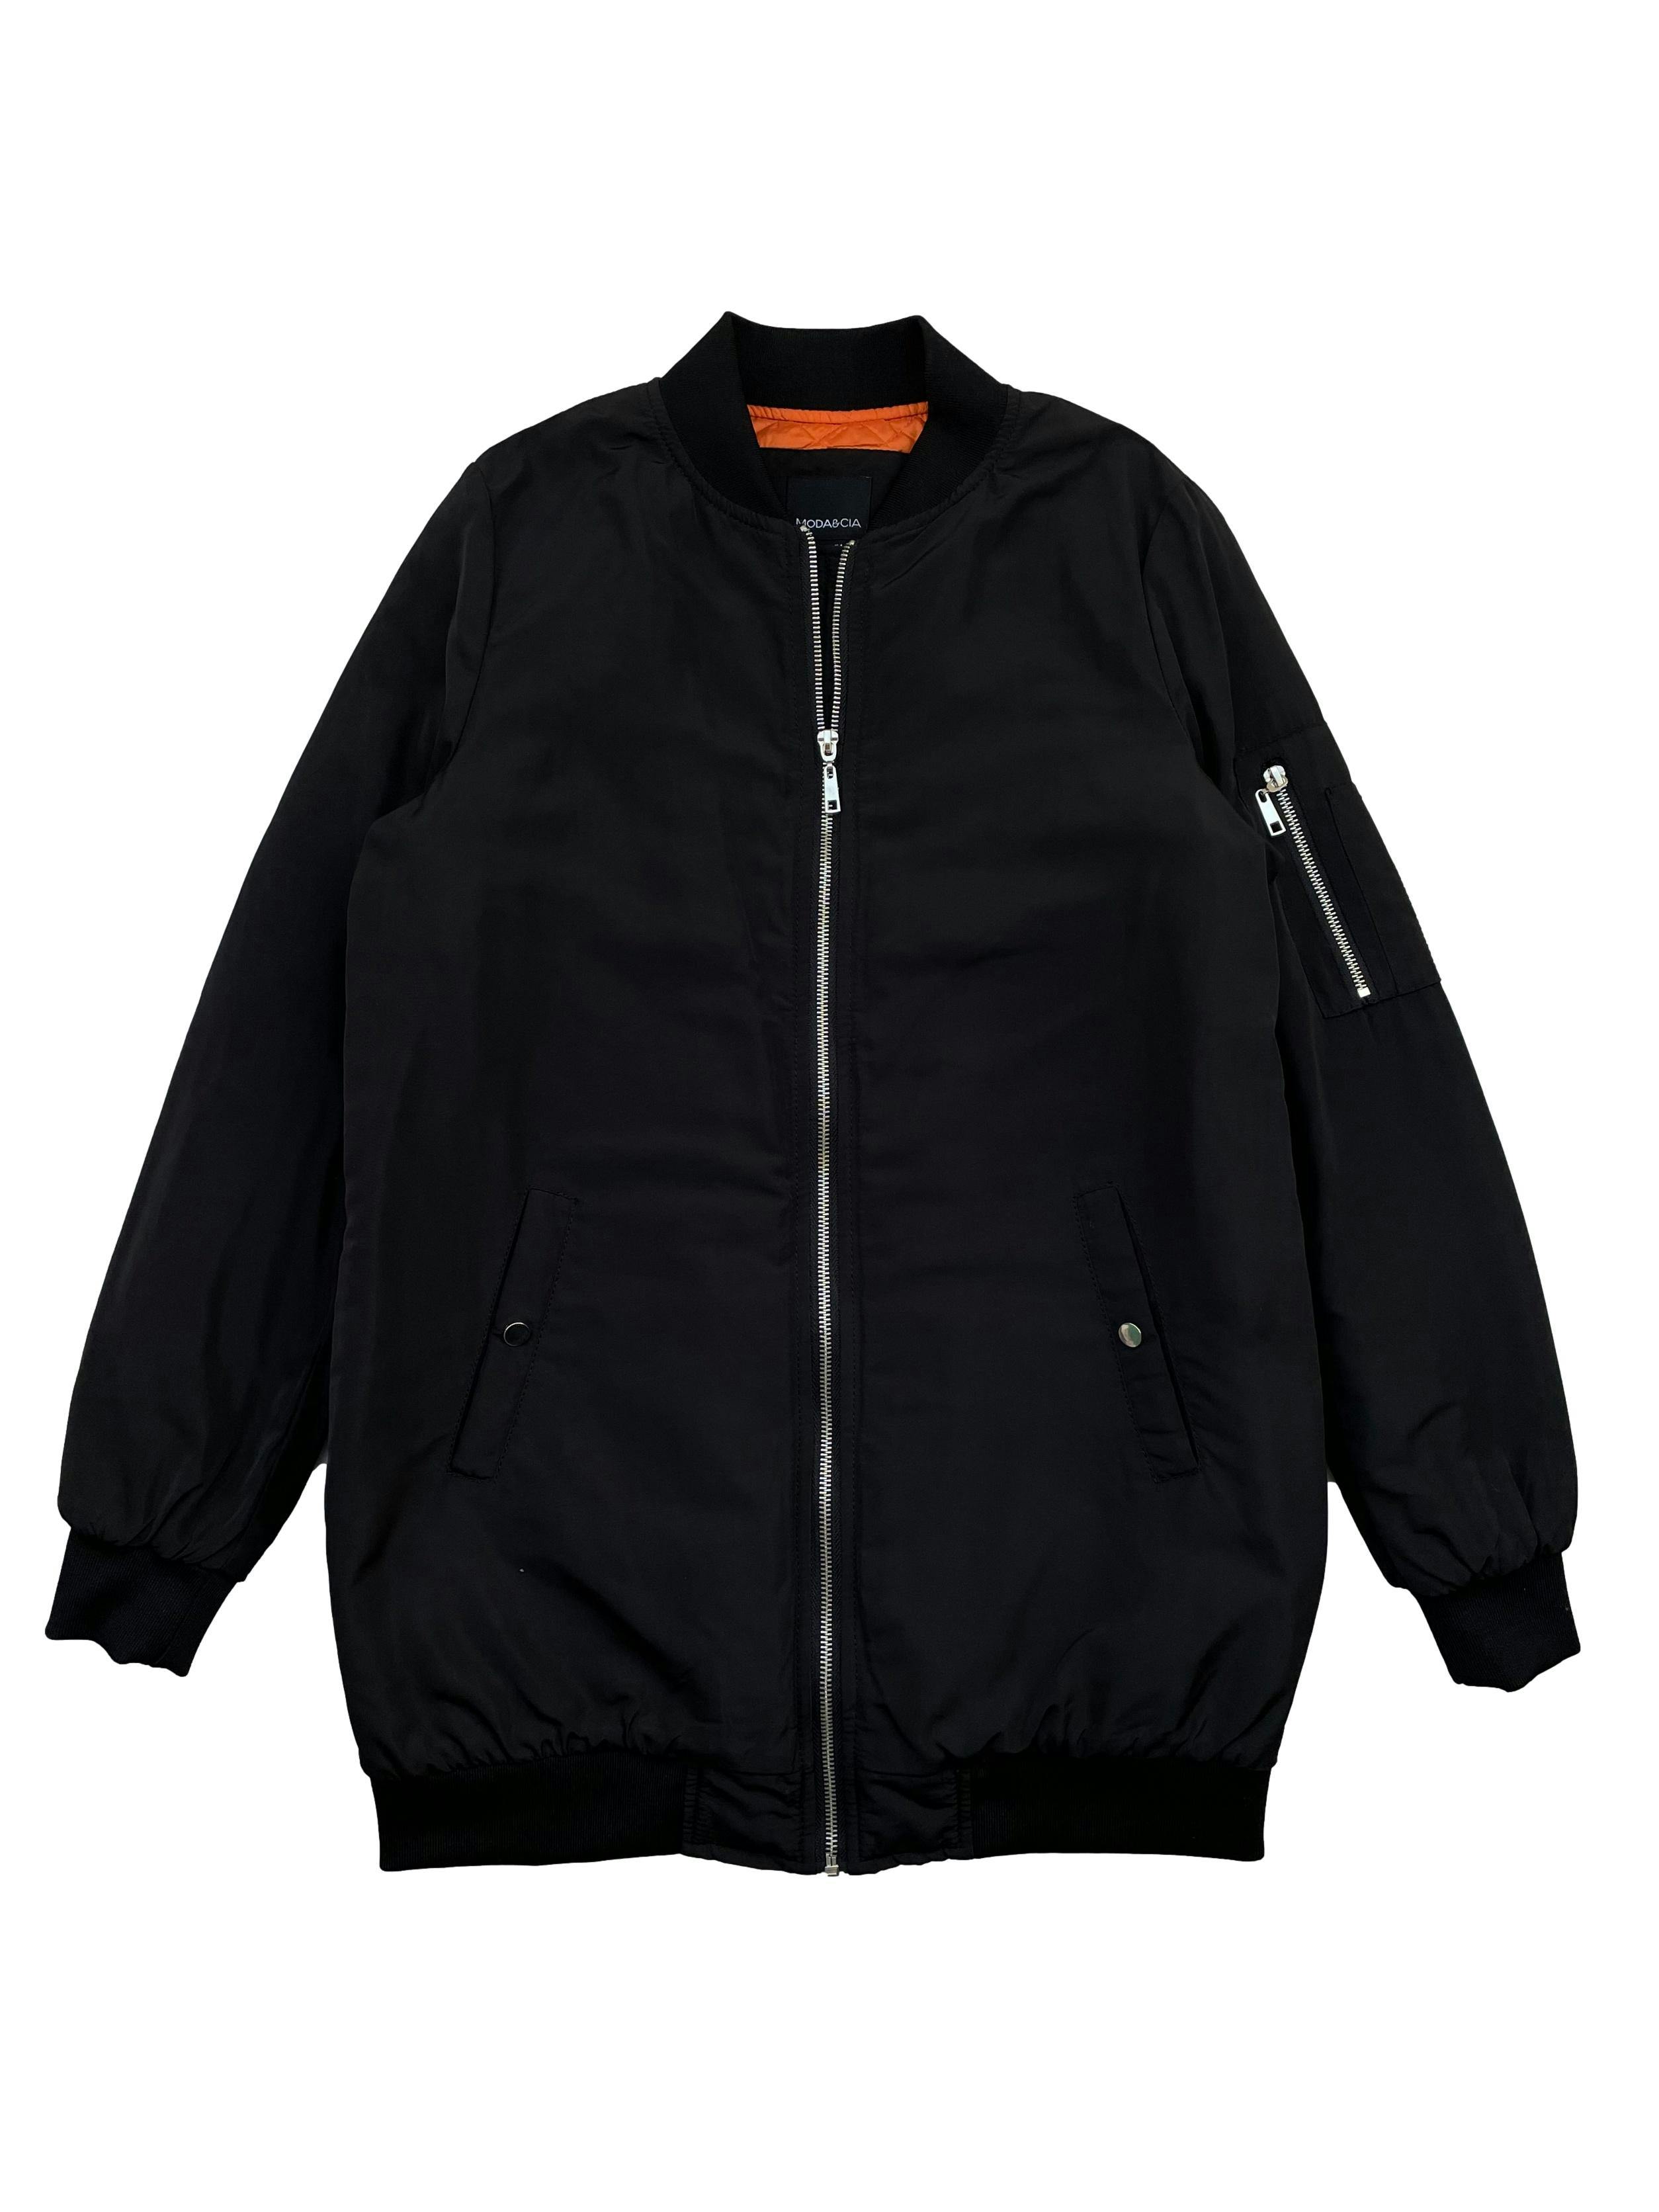 Bomber jacket Moda&Cia negra con forro naranja, ligeramente acolchada, cierre frontal , dos bolsillos delanteros y un bolsillo con cierre en el brazo. Busto 102cm , Largo 75cm. Precio original S/ 399